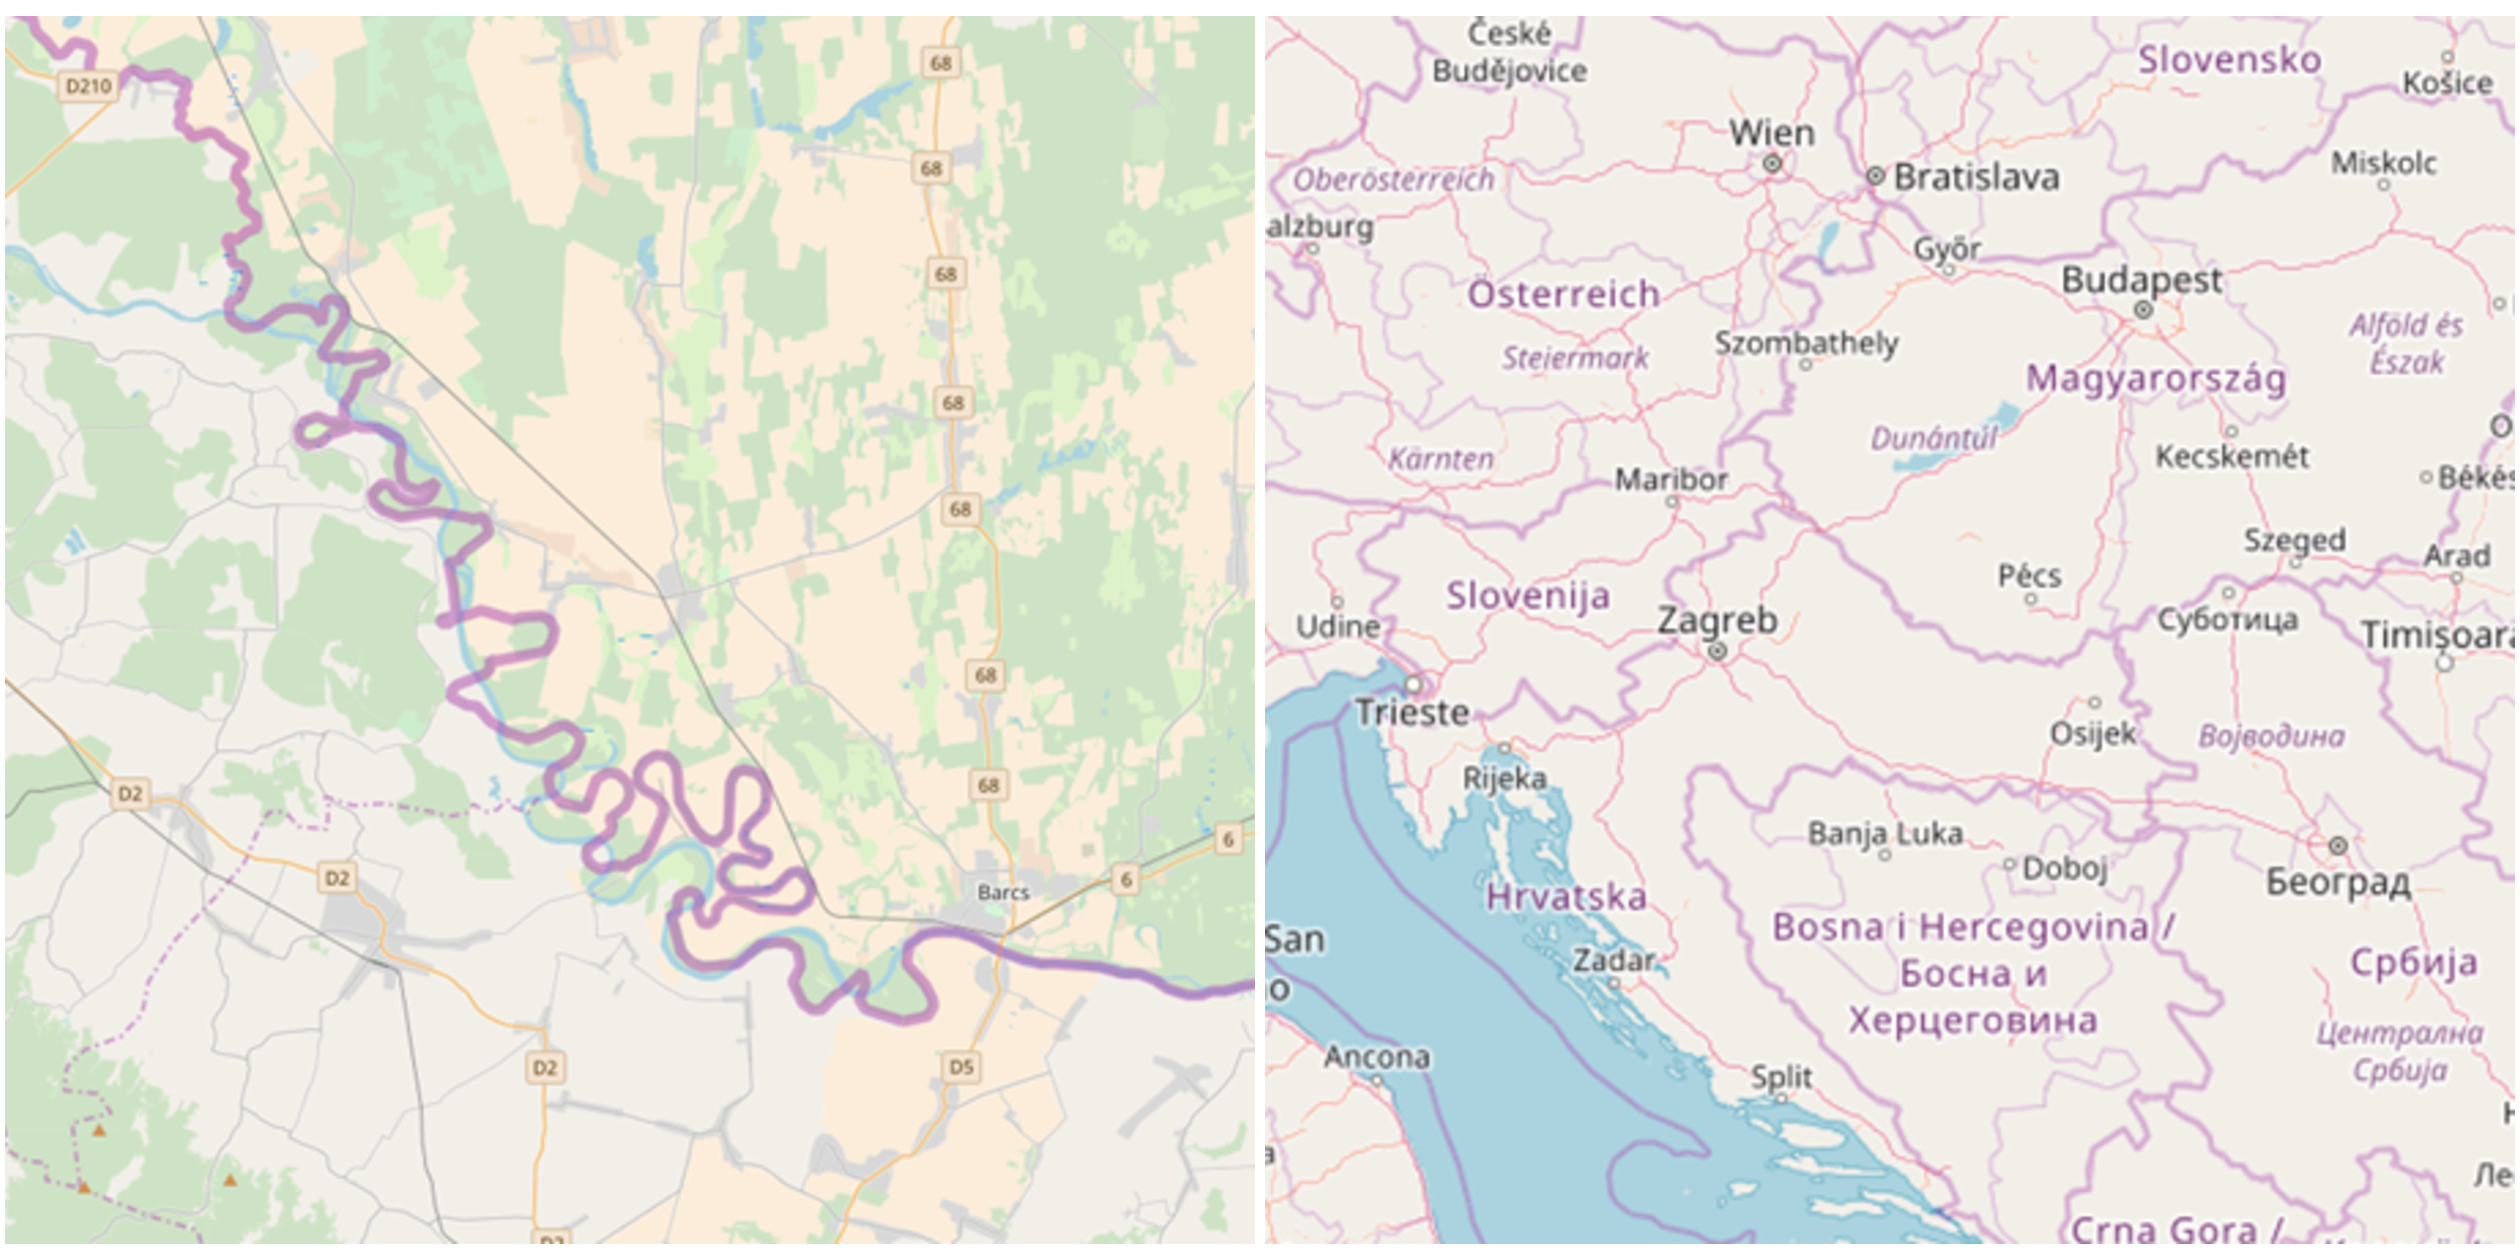 Primer pojednostavljivanja - složena granica između Hrvatske i Mađarske (Izvor: OpenStreetMap).